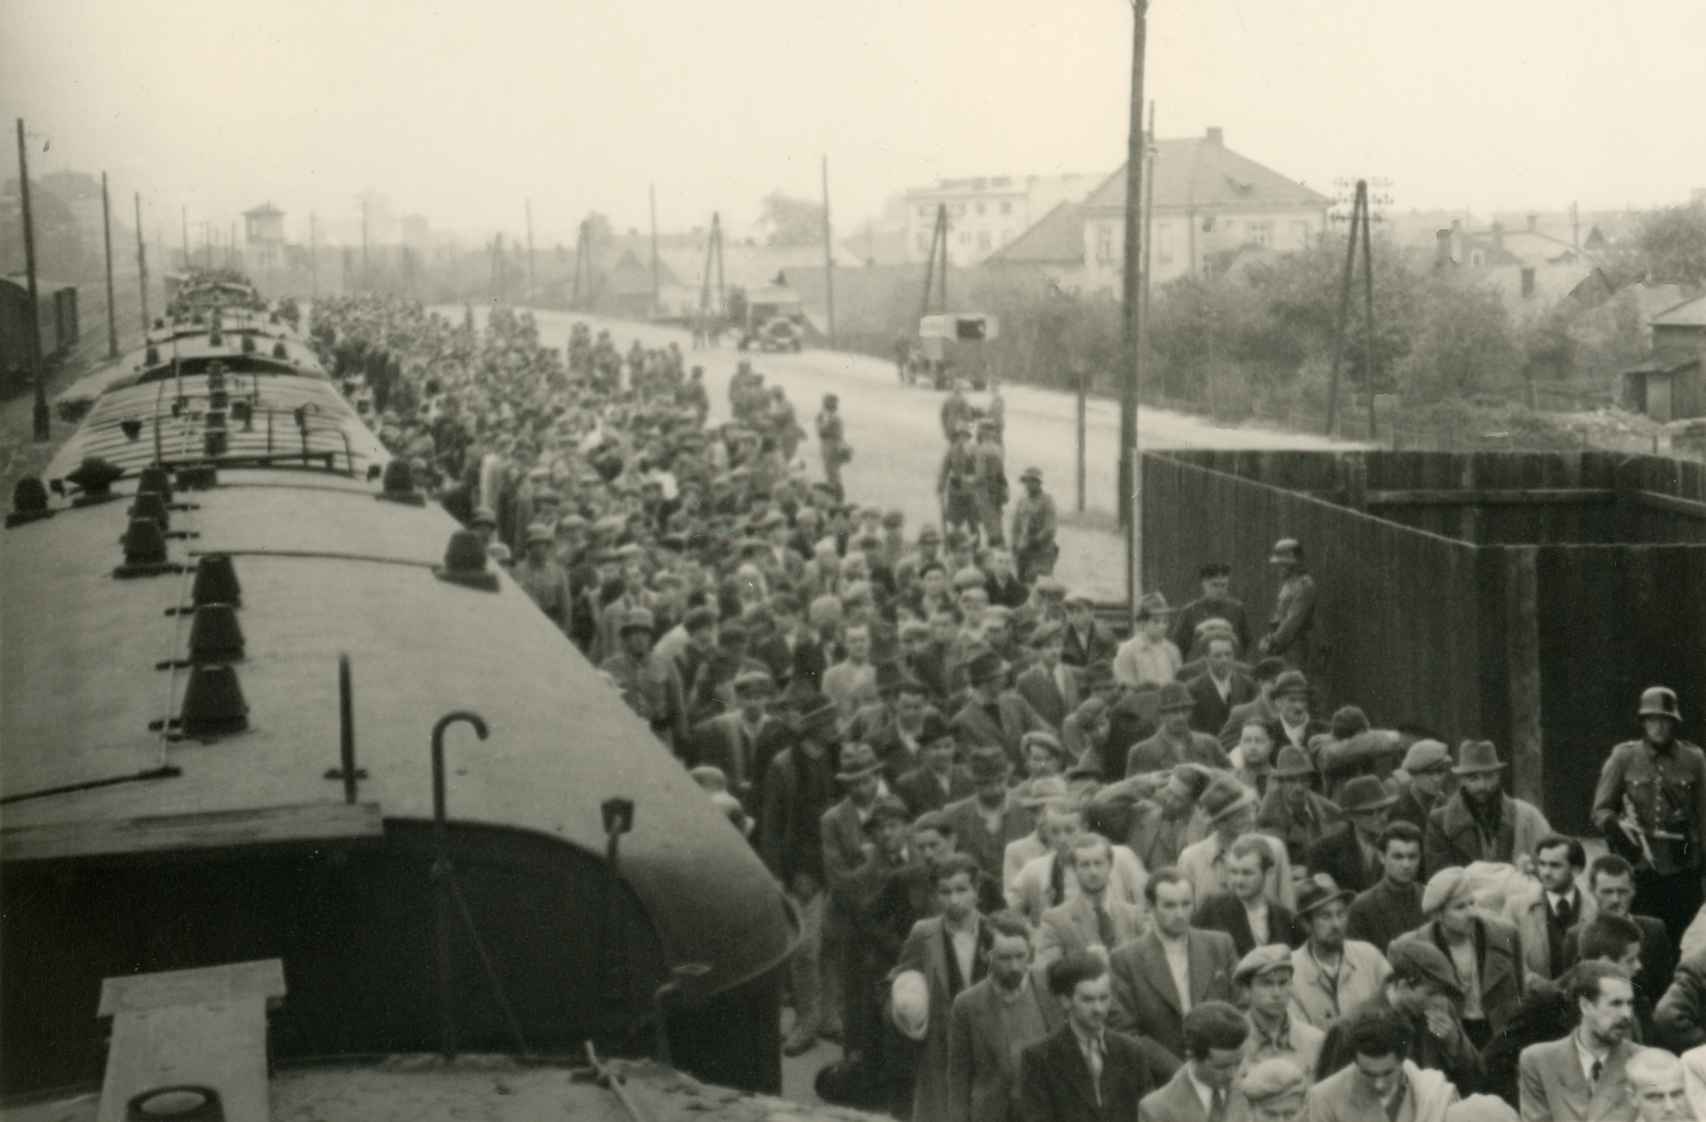 728 prisioneros políticos polacos fueron deportados a Auschwitz el 14 de junio de 1940.